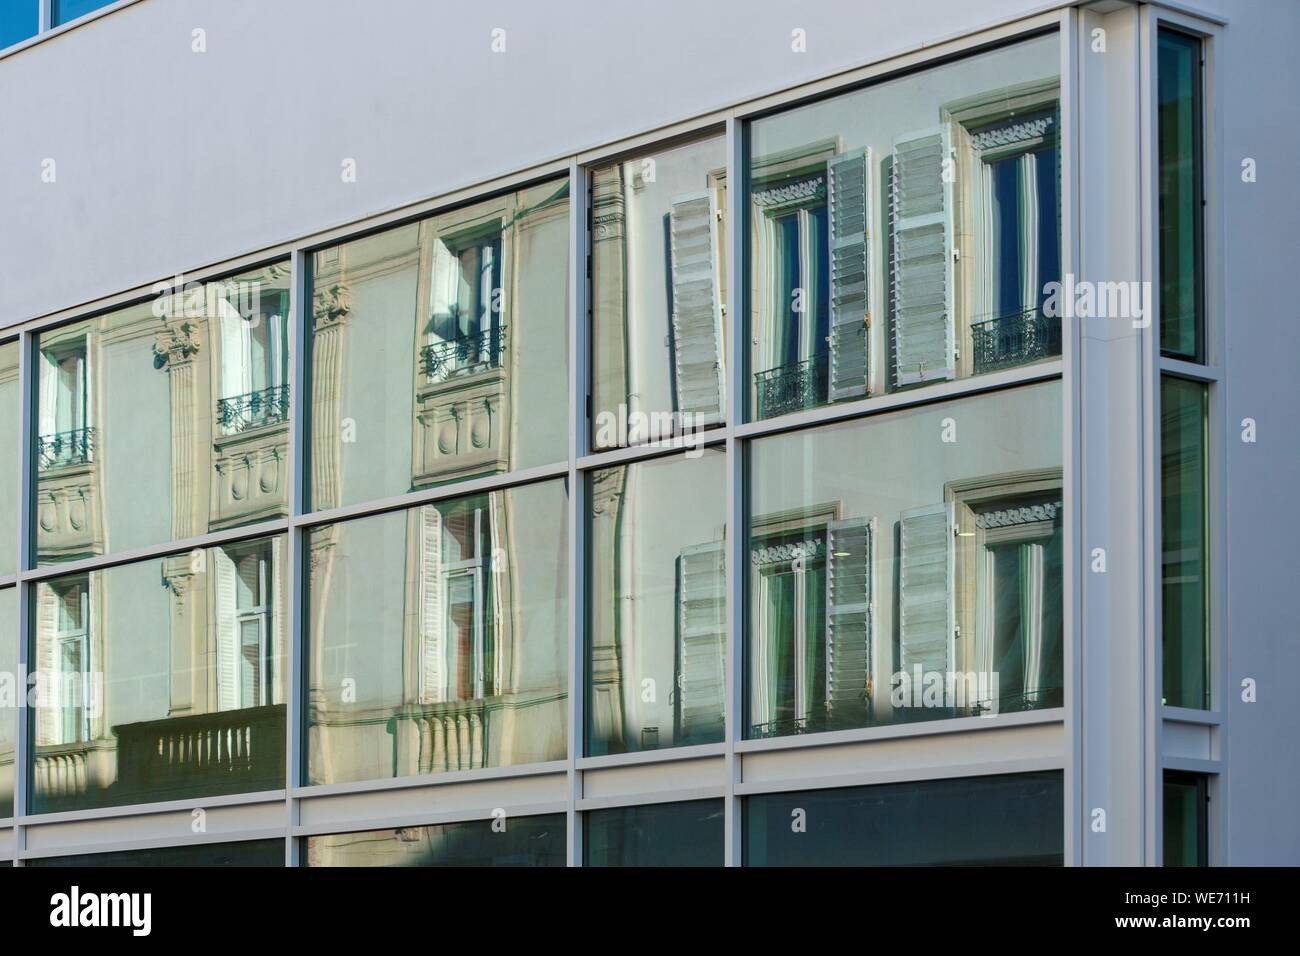 Francia, Meurthe et Moselle, Nancy, reflejo de casas en Rue Desilles sobre el cristal de la ventanilla de un edificio moderno. Foto de stock